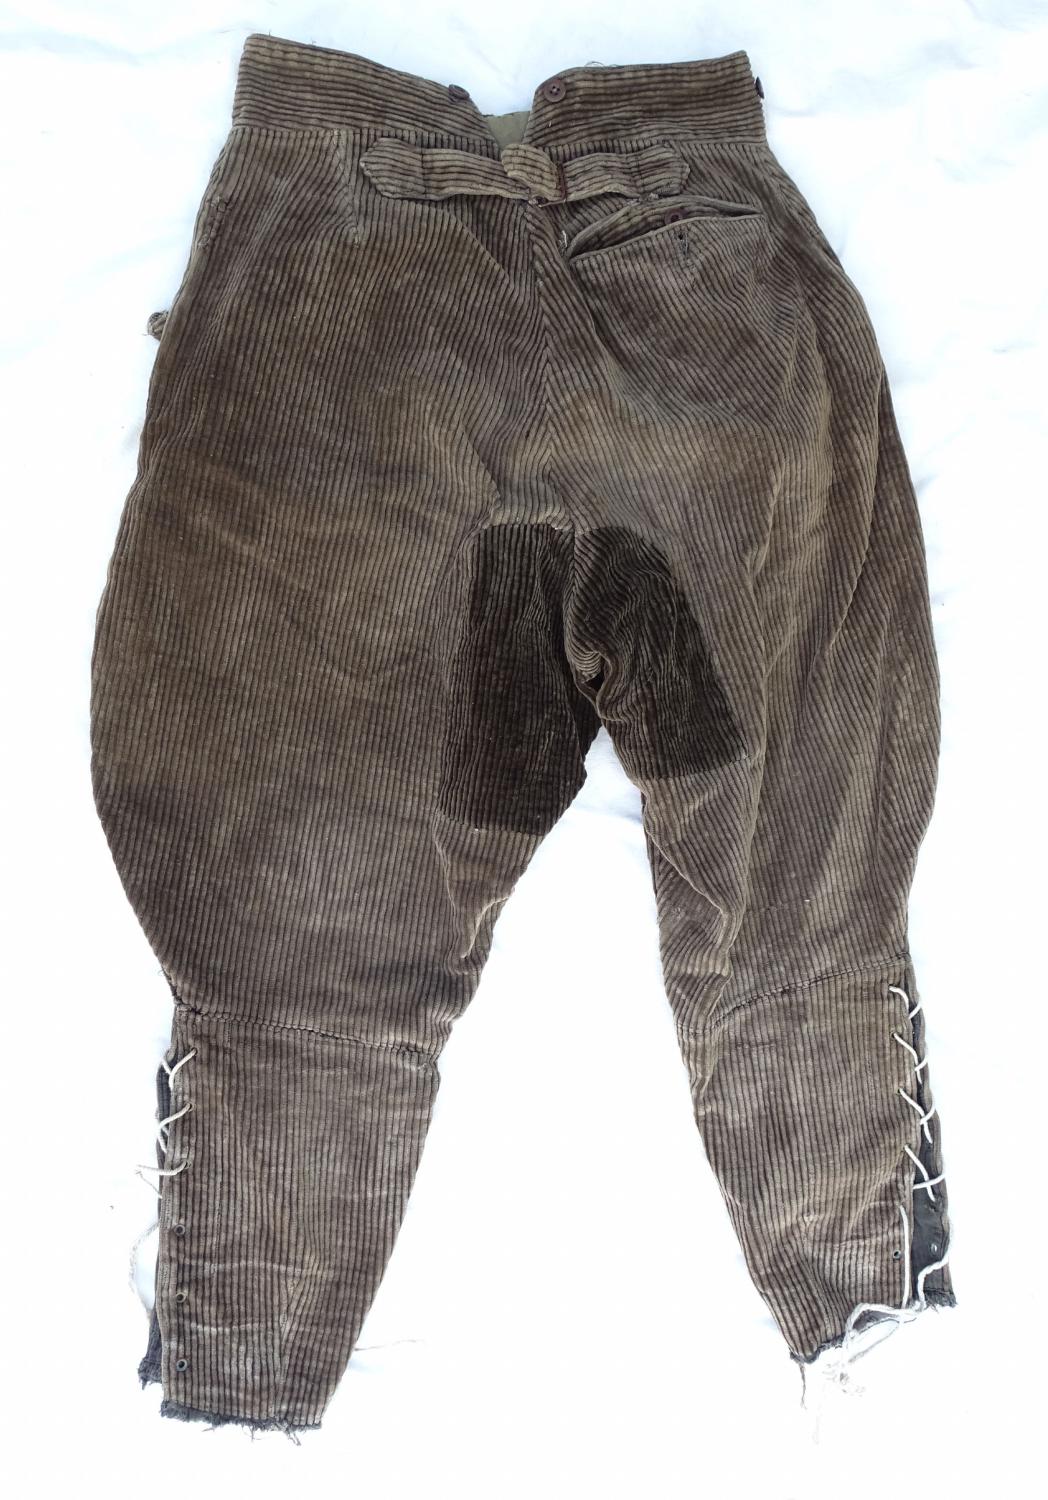 Pantalon-culotte en velours gris-brun.